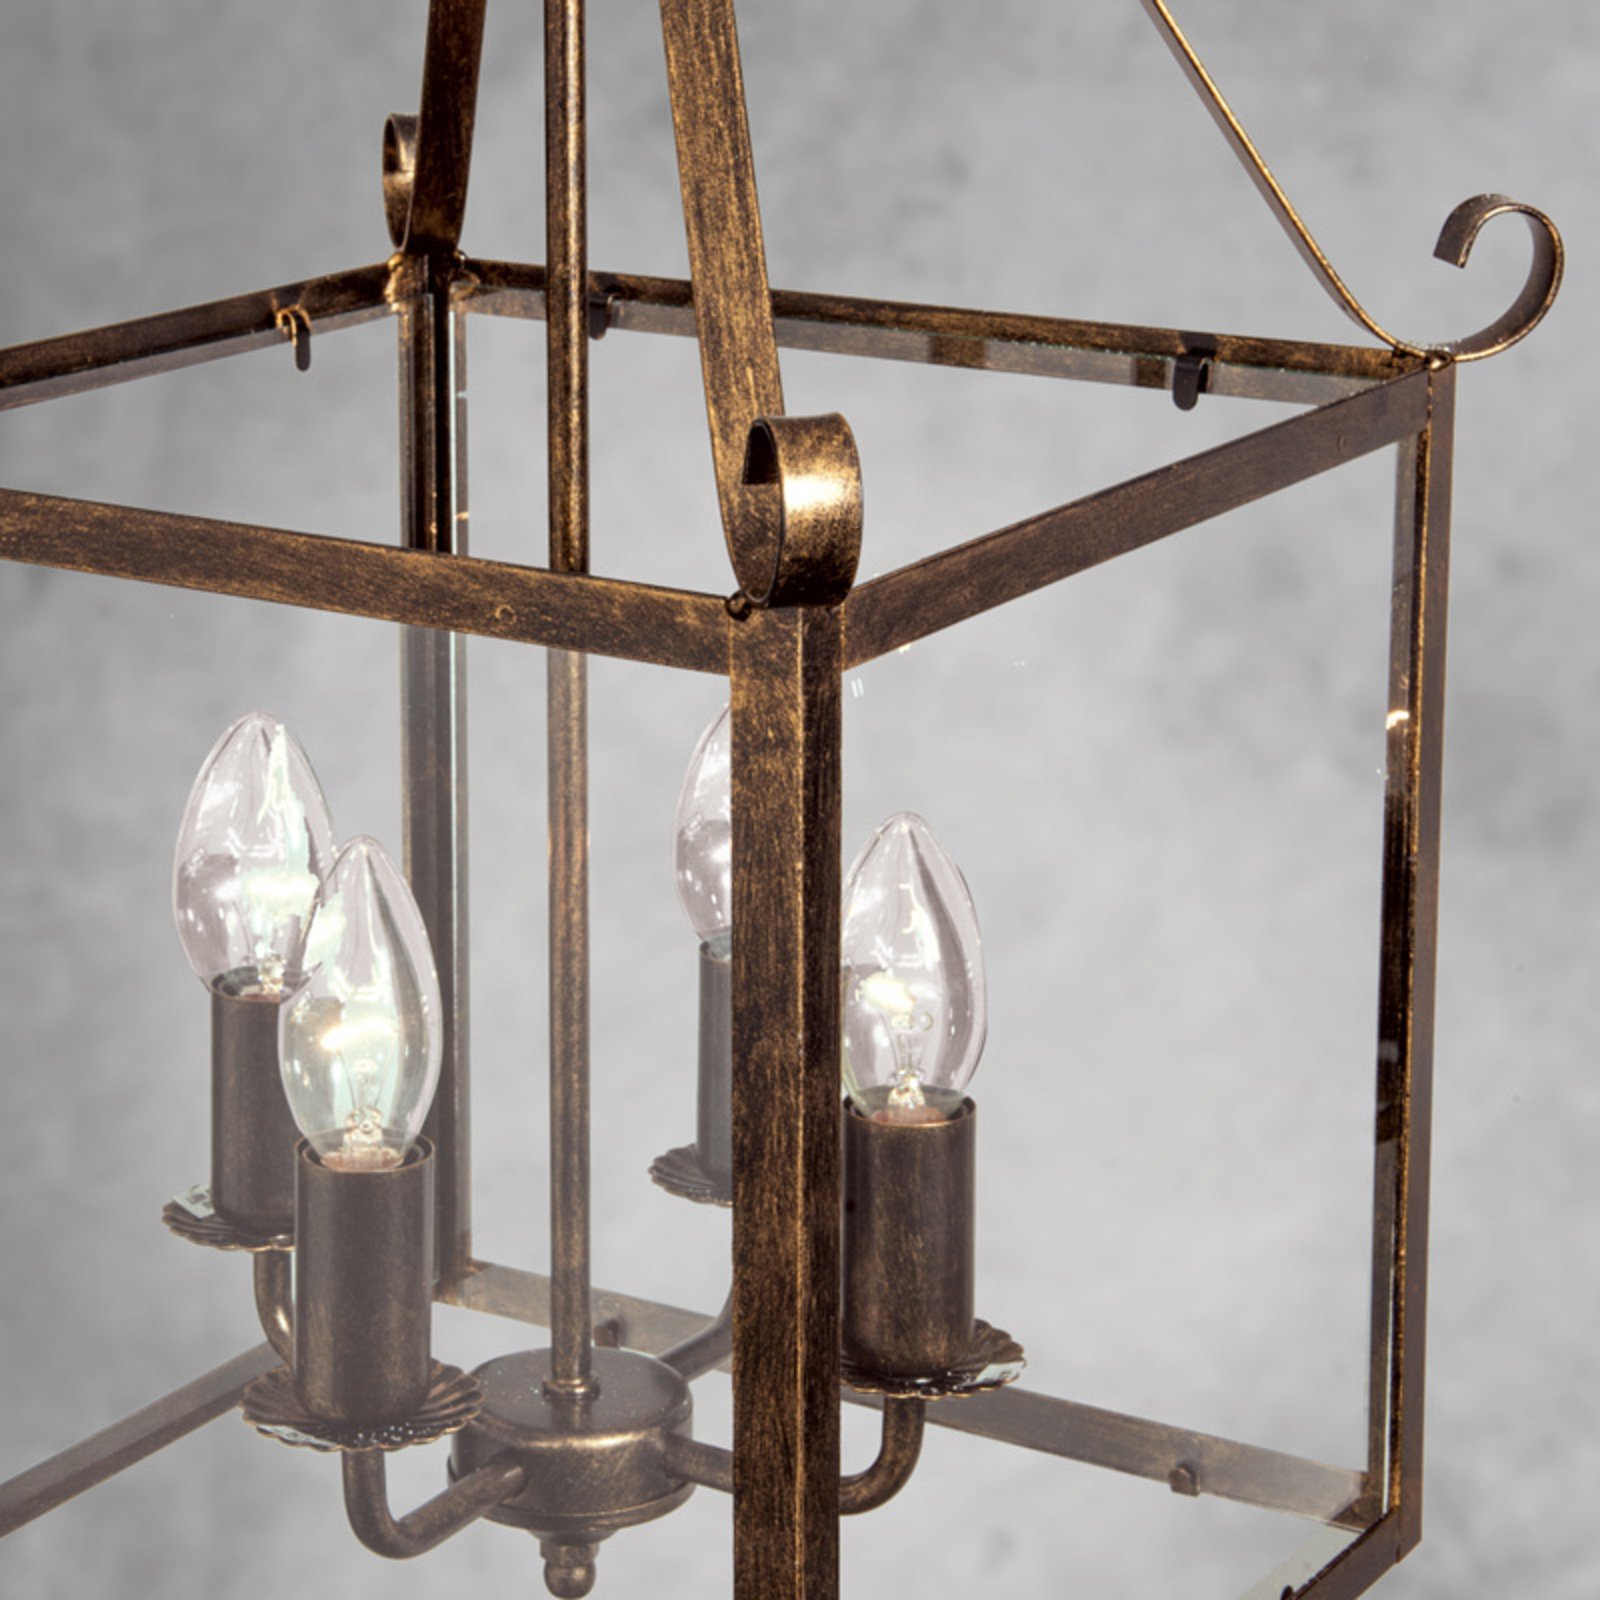 Manto hængelampe, kantet, antikguld, 4 lyskilder